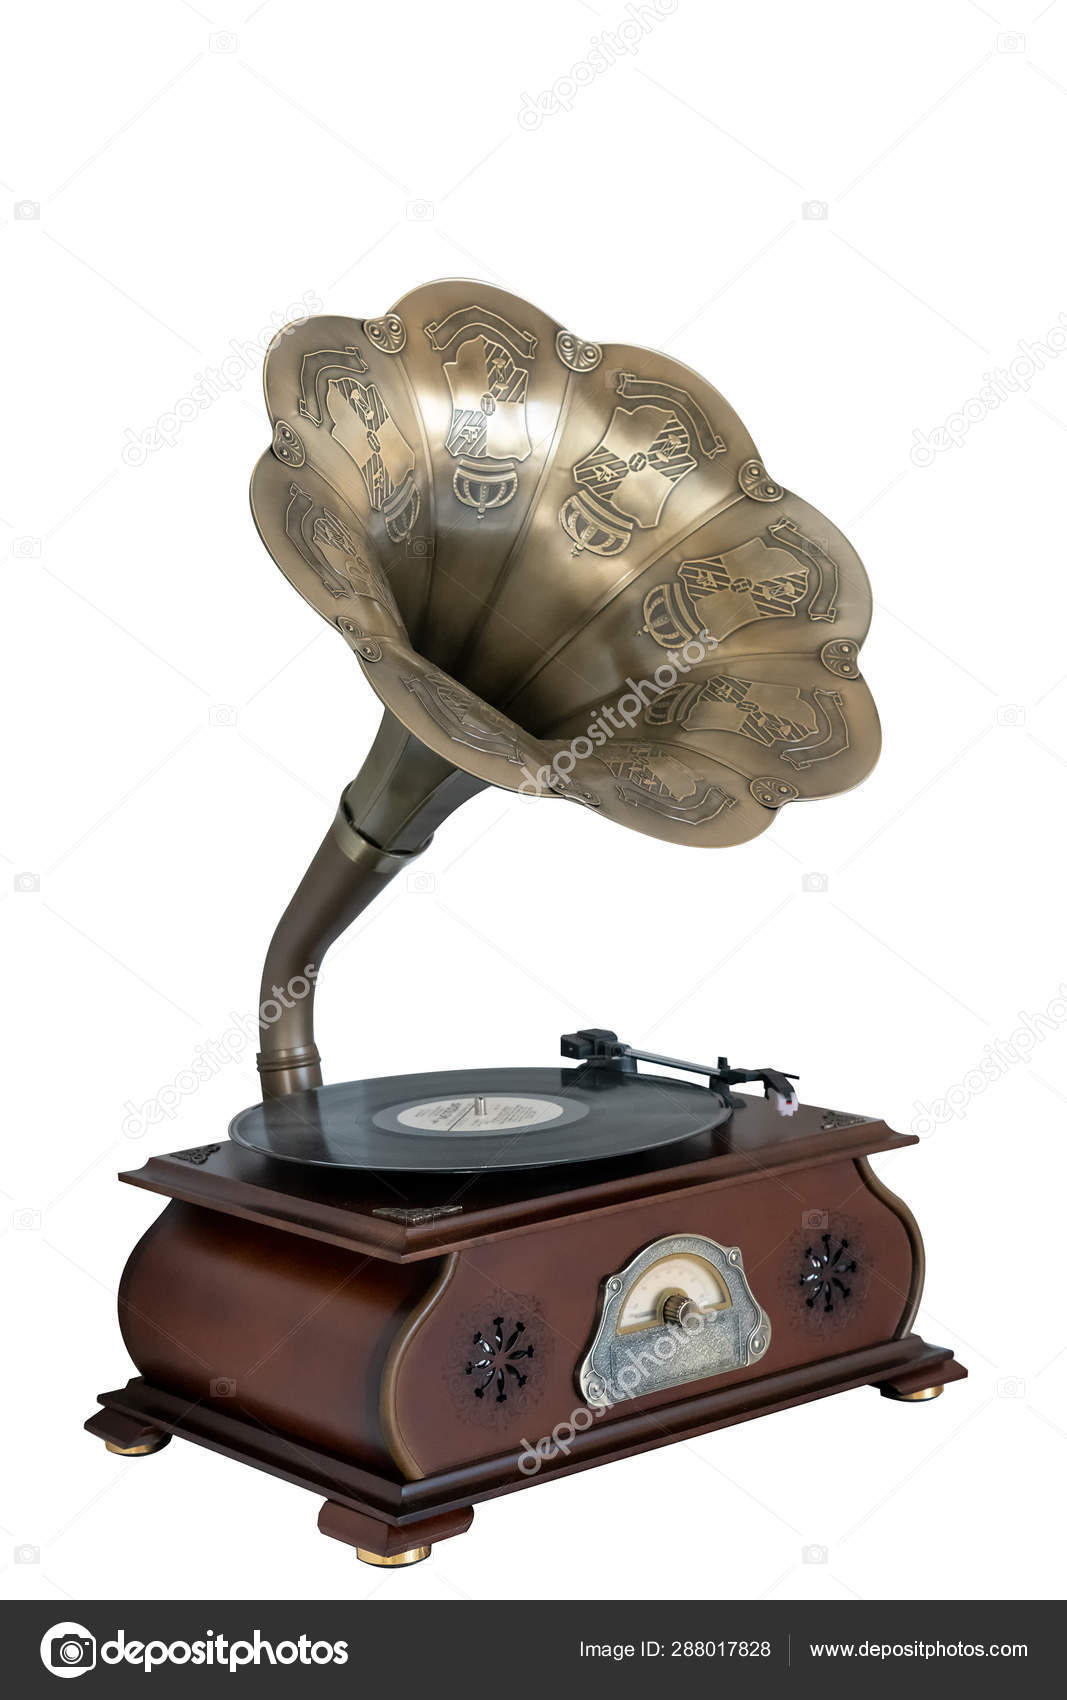 Gramophone antique Foto Stock, Gramophone antique Immagini